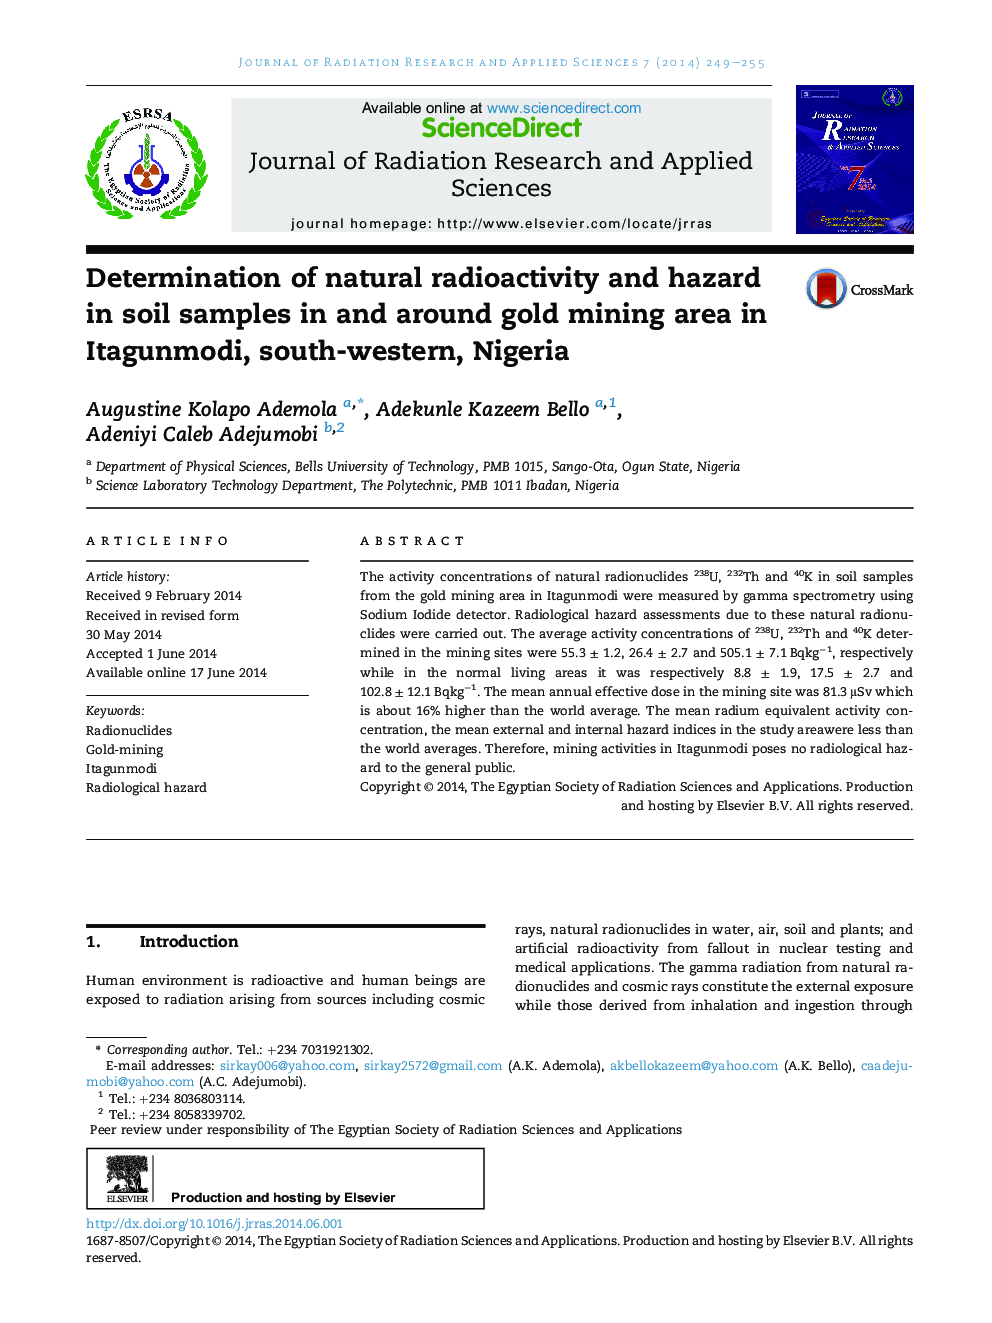 تعیین رادیواکتیویته طبیعی و خطر در نمونه های خاک در منطقه معدن طلای اطراف آن در ایتگوونمودی، جنوب غربی نیجریه 